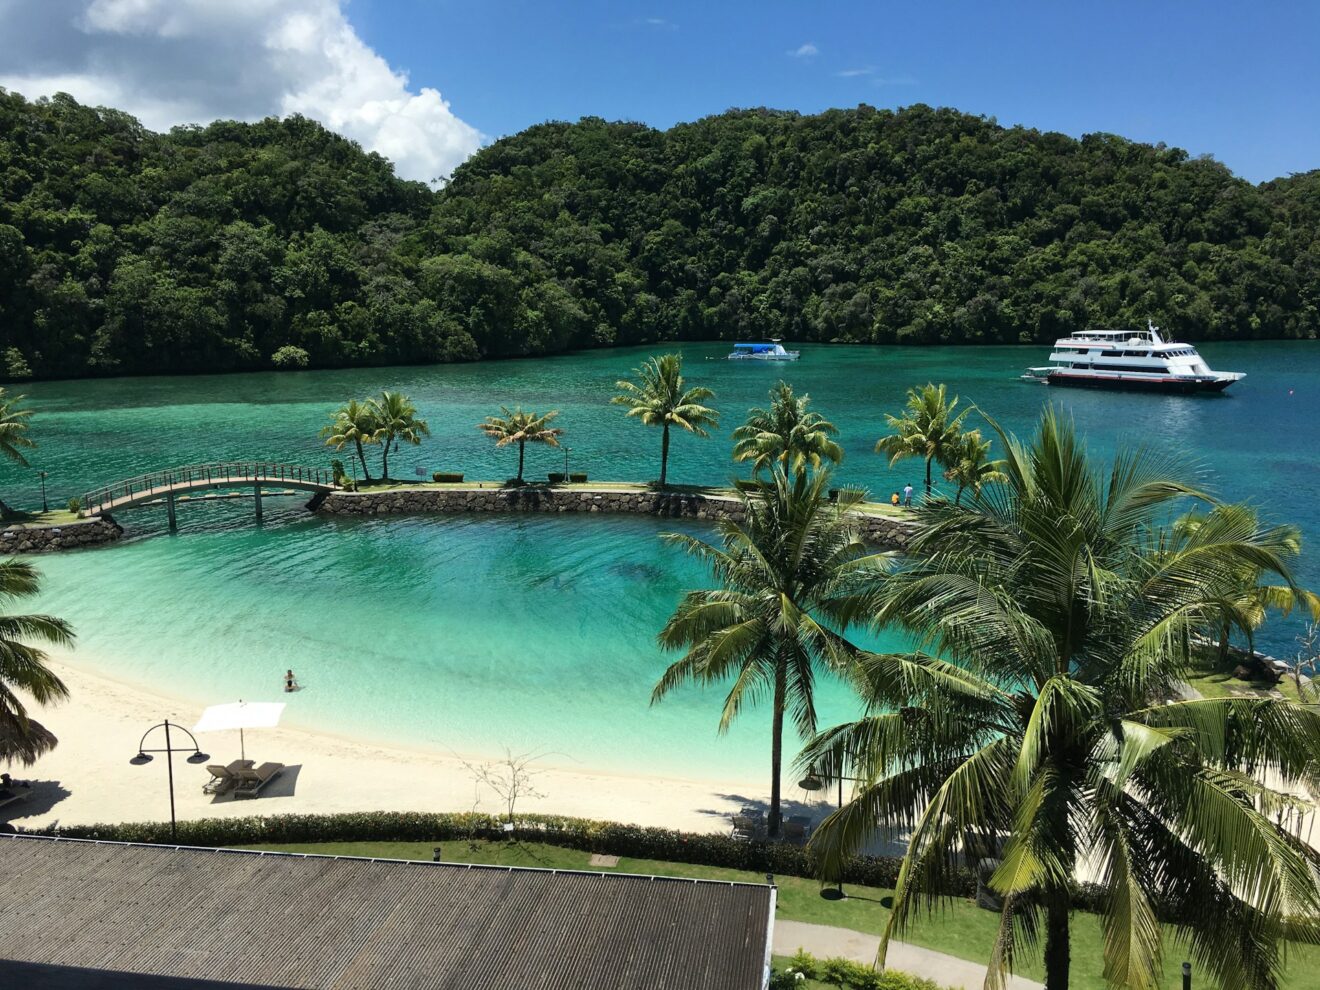 Palau : Les 5 lieux incroyables à découvrir pour un voyage en Océanie inoubliable